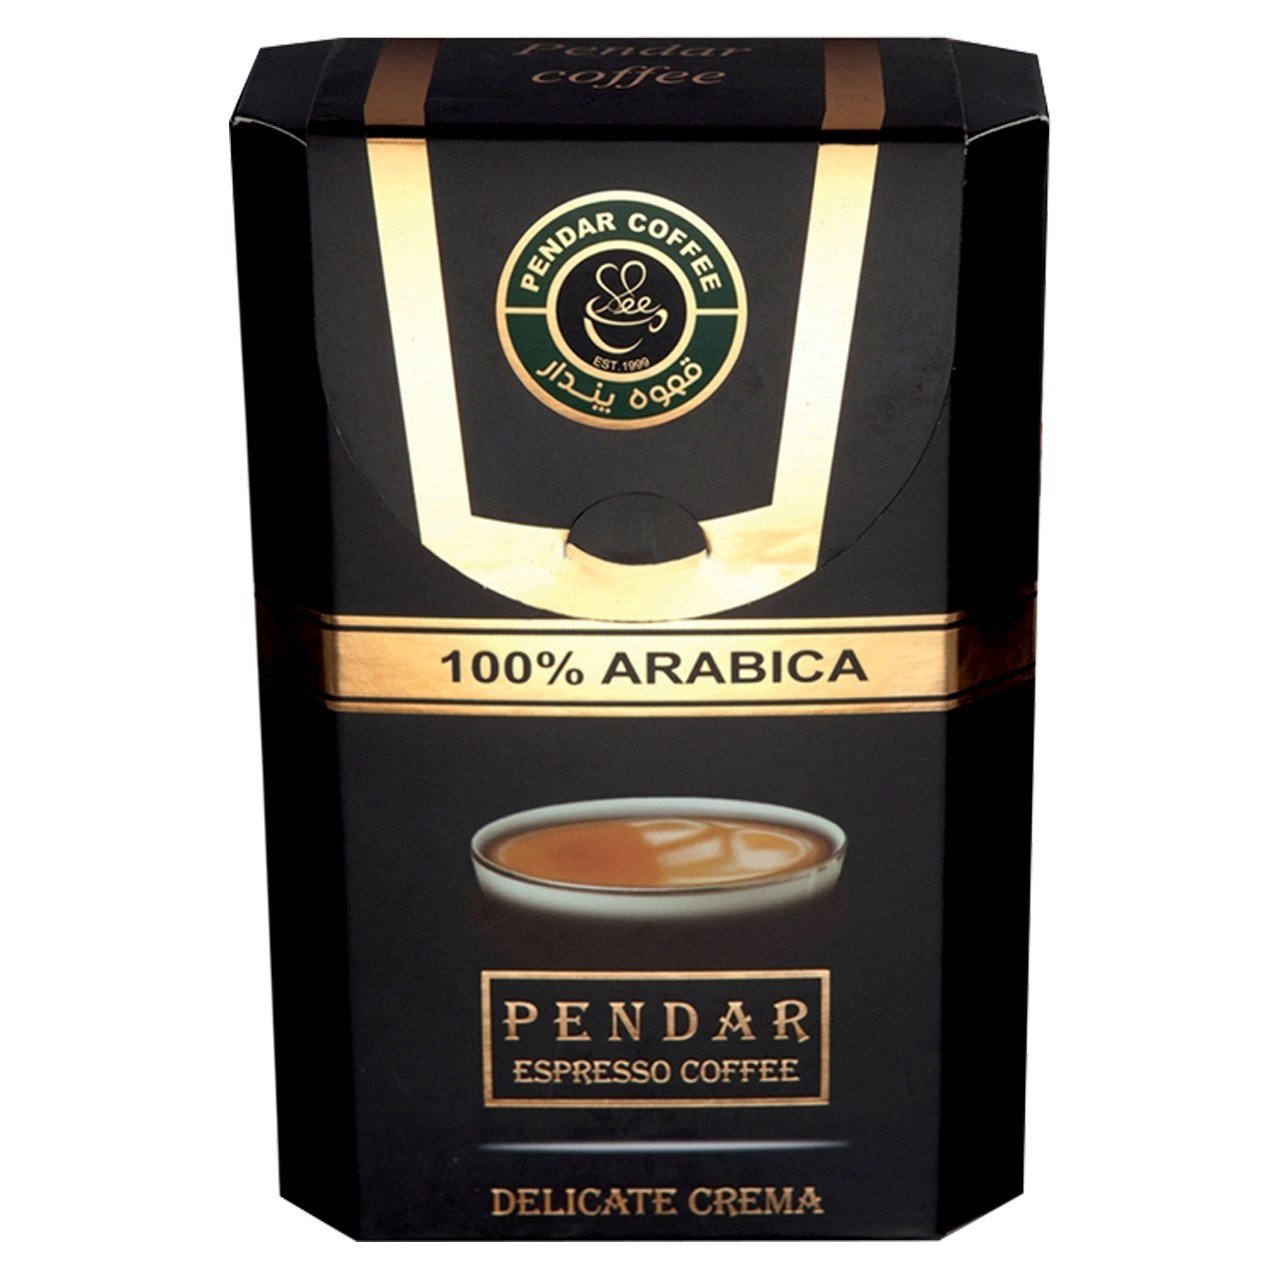 بسته قهوه اسپرسو پندار مدل 100 درصد عربیکا